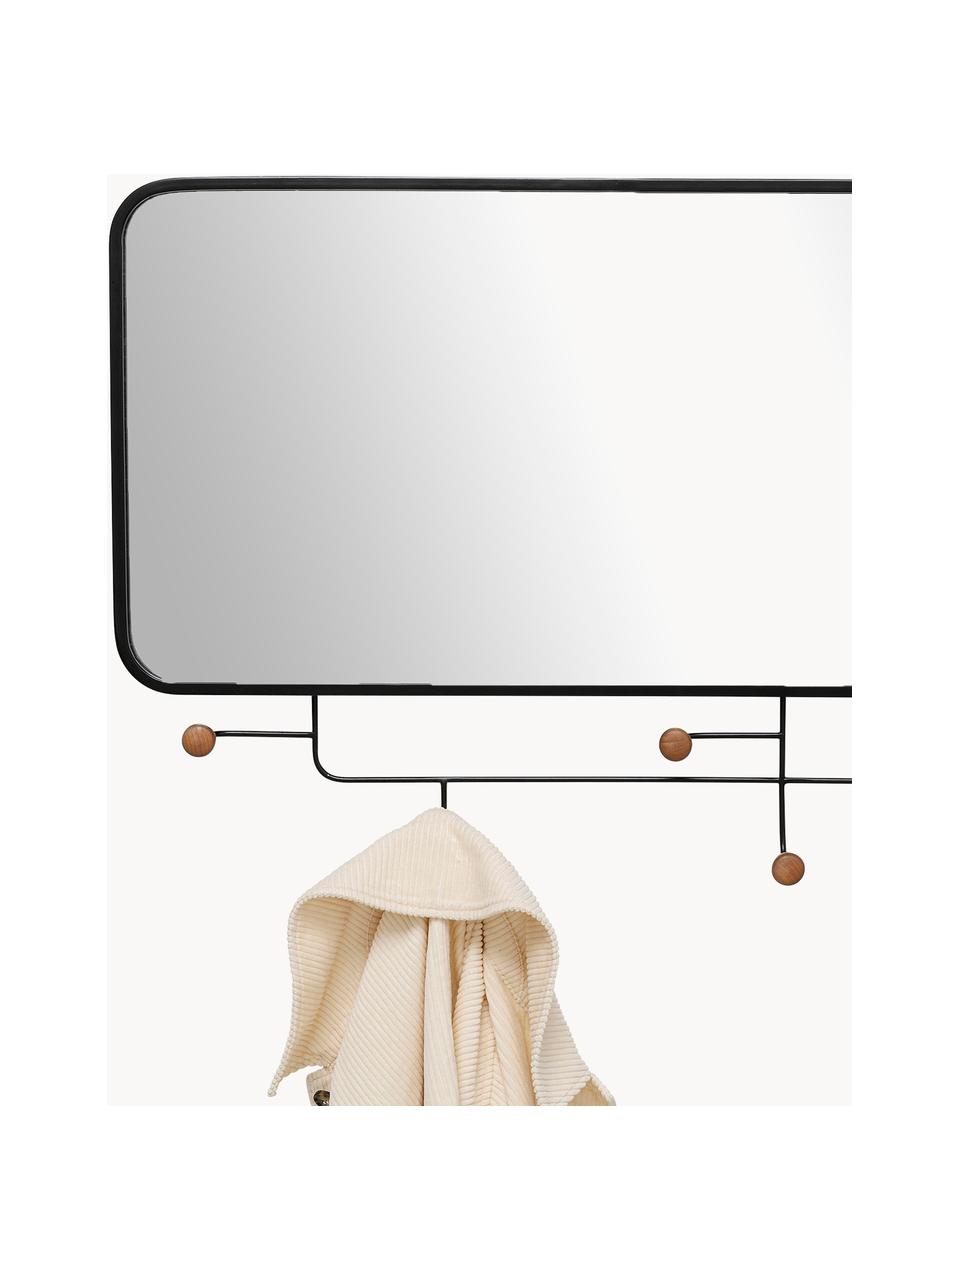 Wandgarderobe Gina mit Spiegel, Gestell: Metall, beschichtet, Spiegelfläche: Spiegelglas, Haken: Tannenholz, lackiert, Schwarz, Tannenholz, B 100 x H 54 cm